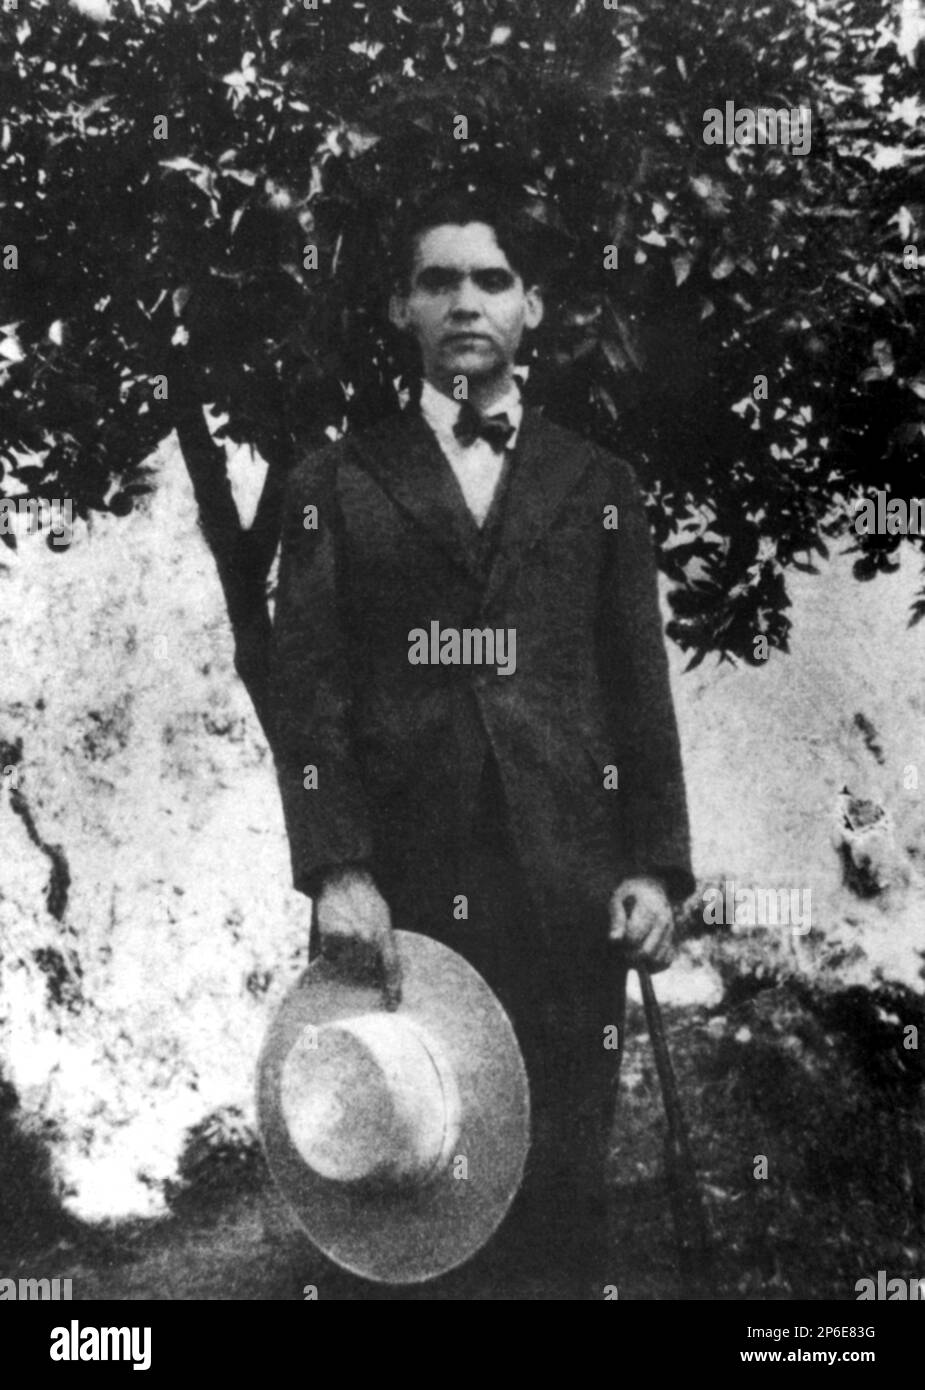 1918 , Granada , SPANIEN : der spanische Dichter FEDERICO GARCIA LORCA ( 1898 - 1936 ) als Kind im Alter von 20 Jahren in La Alpujarra , Granada . POETA - POESIA - POESIE - POESIE - LETTERATURA - LITERATUR - Letterato - SCHWUL - homosexuell - Homosexualität - Omosessualità - LGBT - Omosessuale - Portrait - Rituto - personalità celebrità da giovane - Giovani - Prominente Persönlichkeiten, als Junge war - Hut - cappello - Stock - Bastone da passeggio --- Archivio GBB Stockfoto